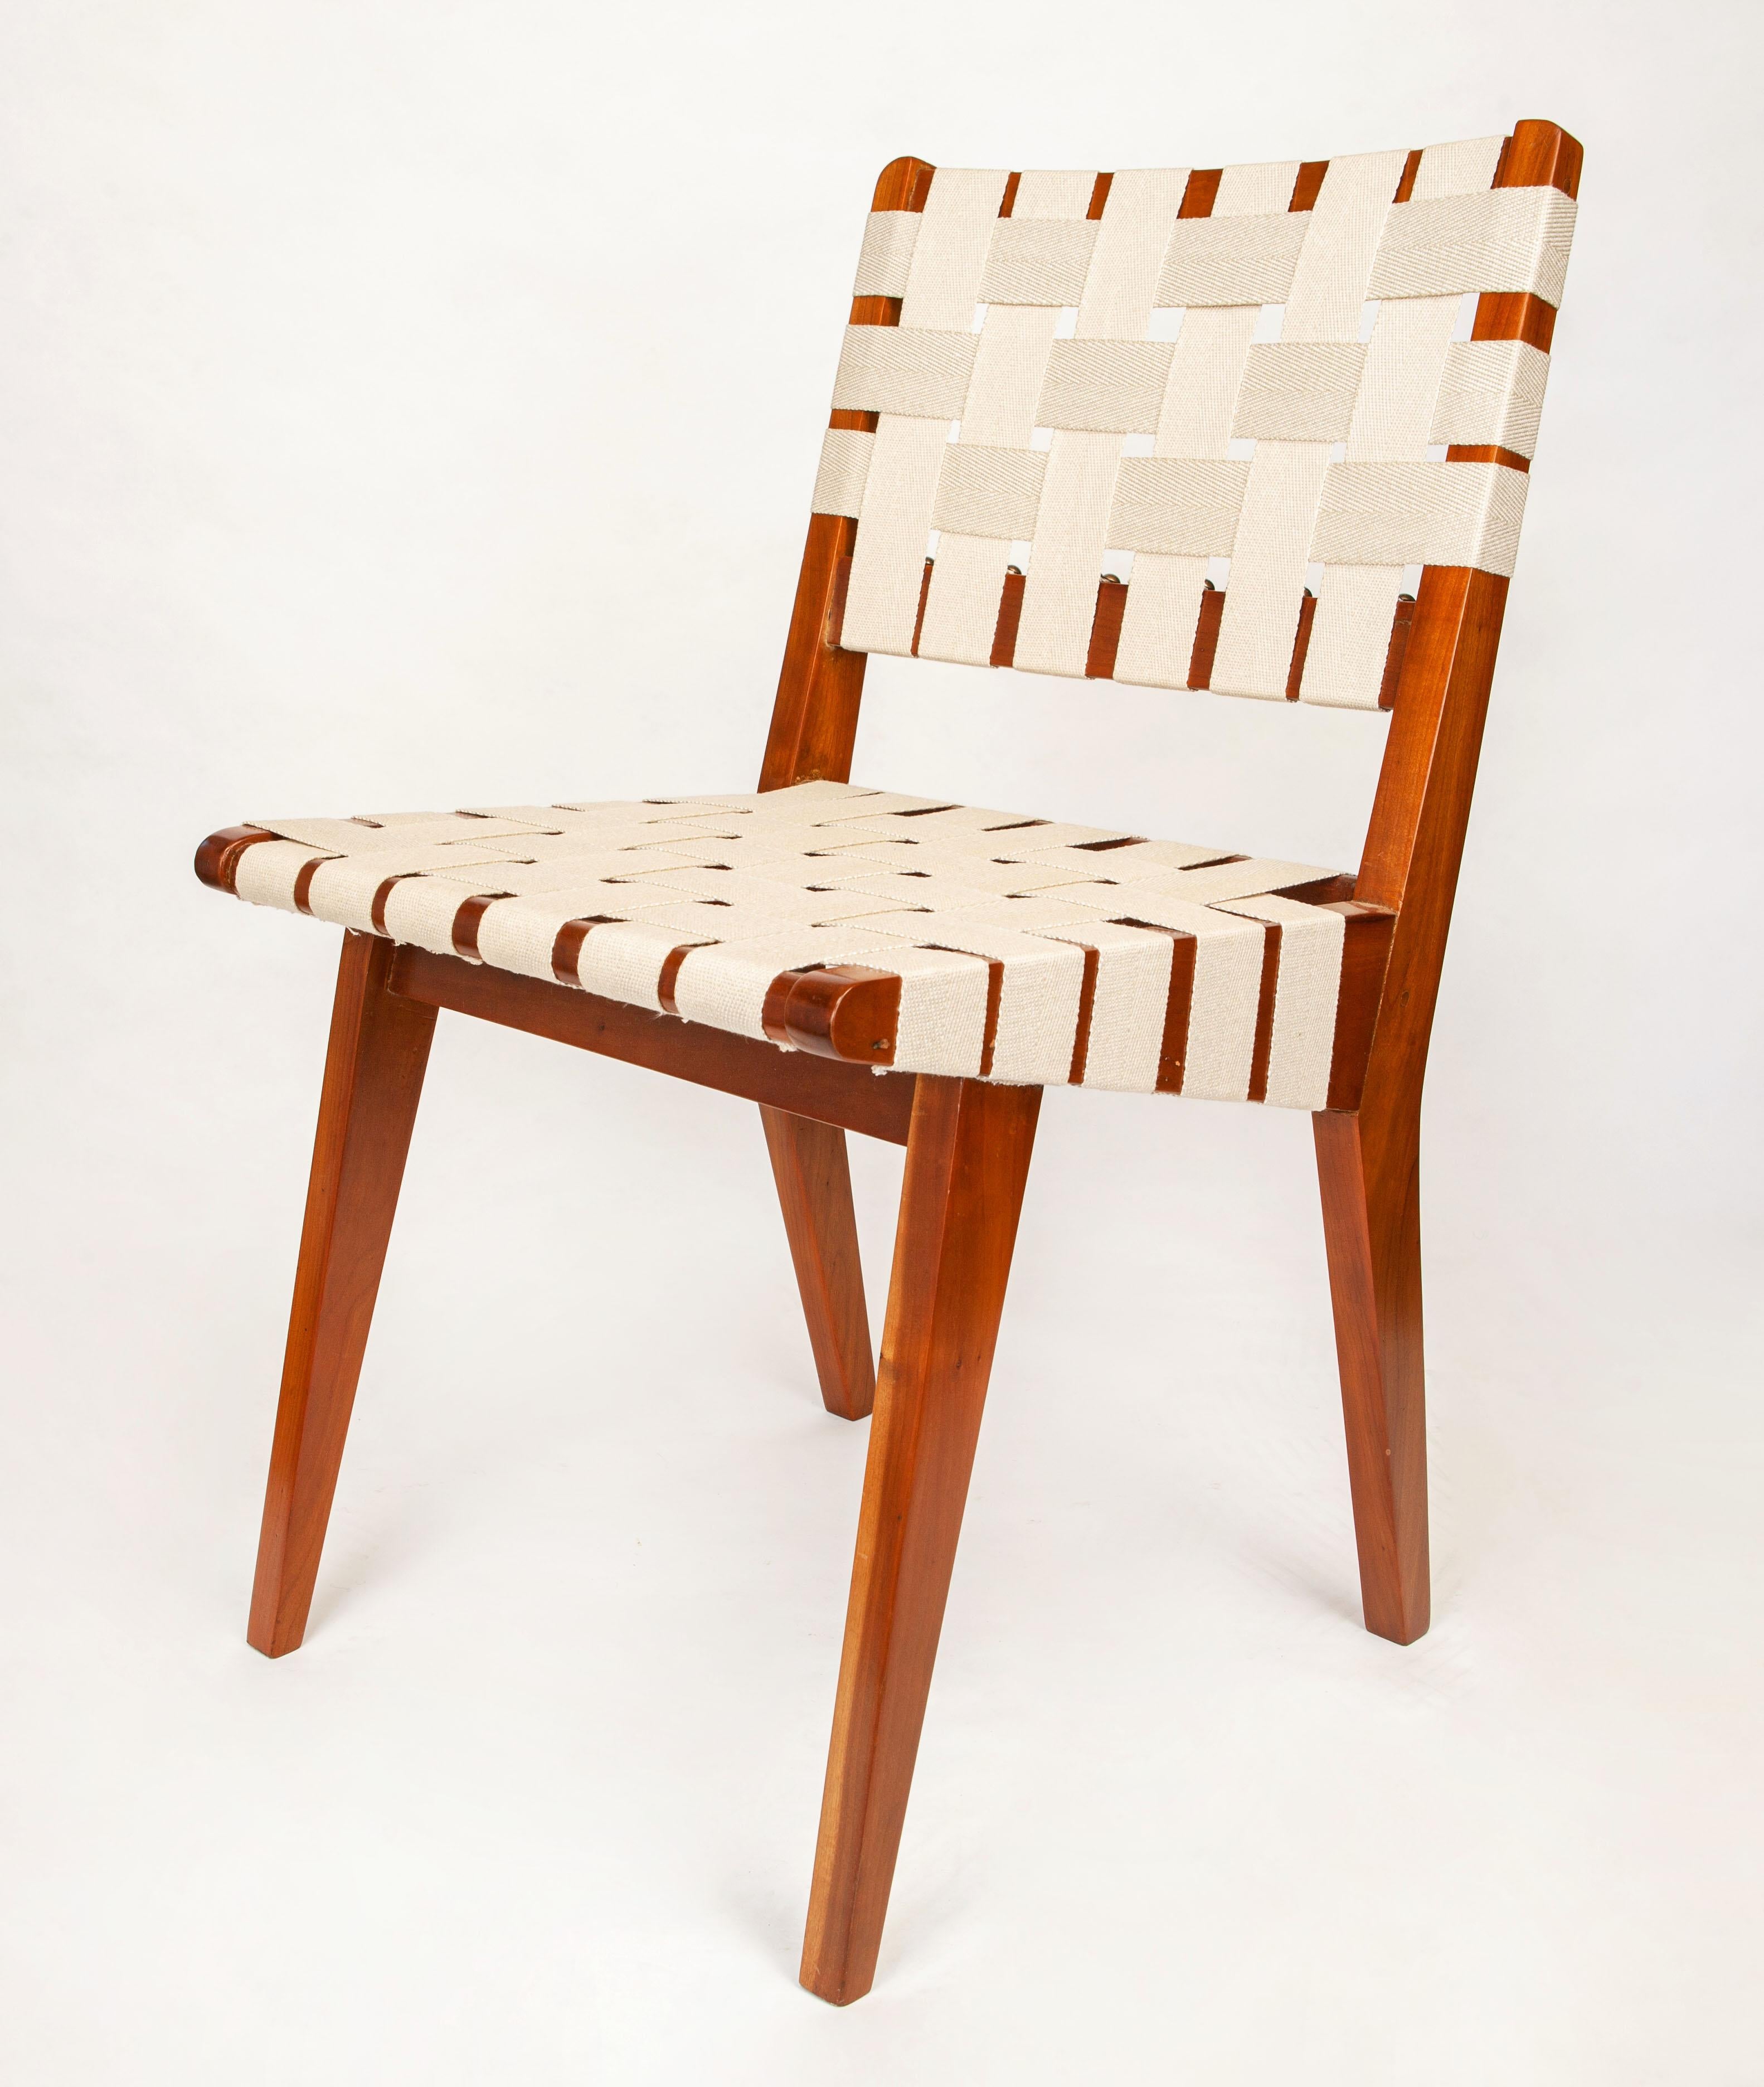 Ein Paar klassische Jens Risom Beistellstühle aus der Mitte des Jahrhunderts, die mit schönem Leinen neu gewebt wurden.

Die Original-Kollektion von Jens Risom für Knoll aus dem Jahr 1941 zeichnet sich durch eine natürliche Ästhetik aus, die für das